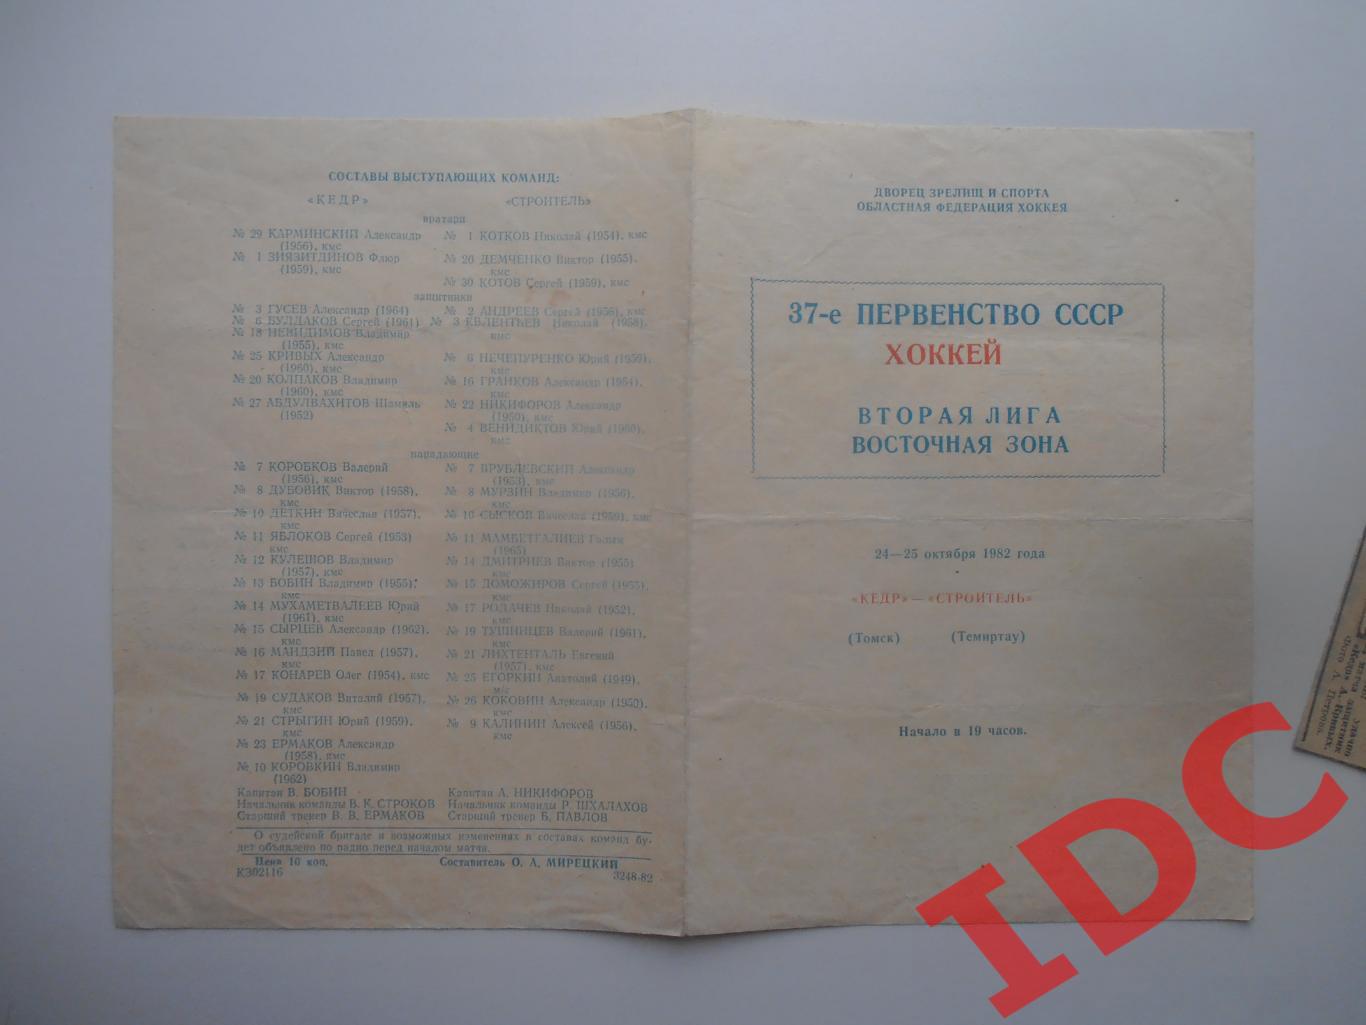 Кедр Томск-Строитель Темиртау 24-25 октября 1982 + 3 отчета